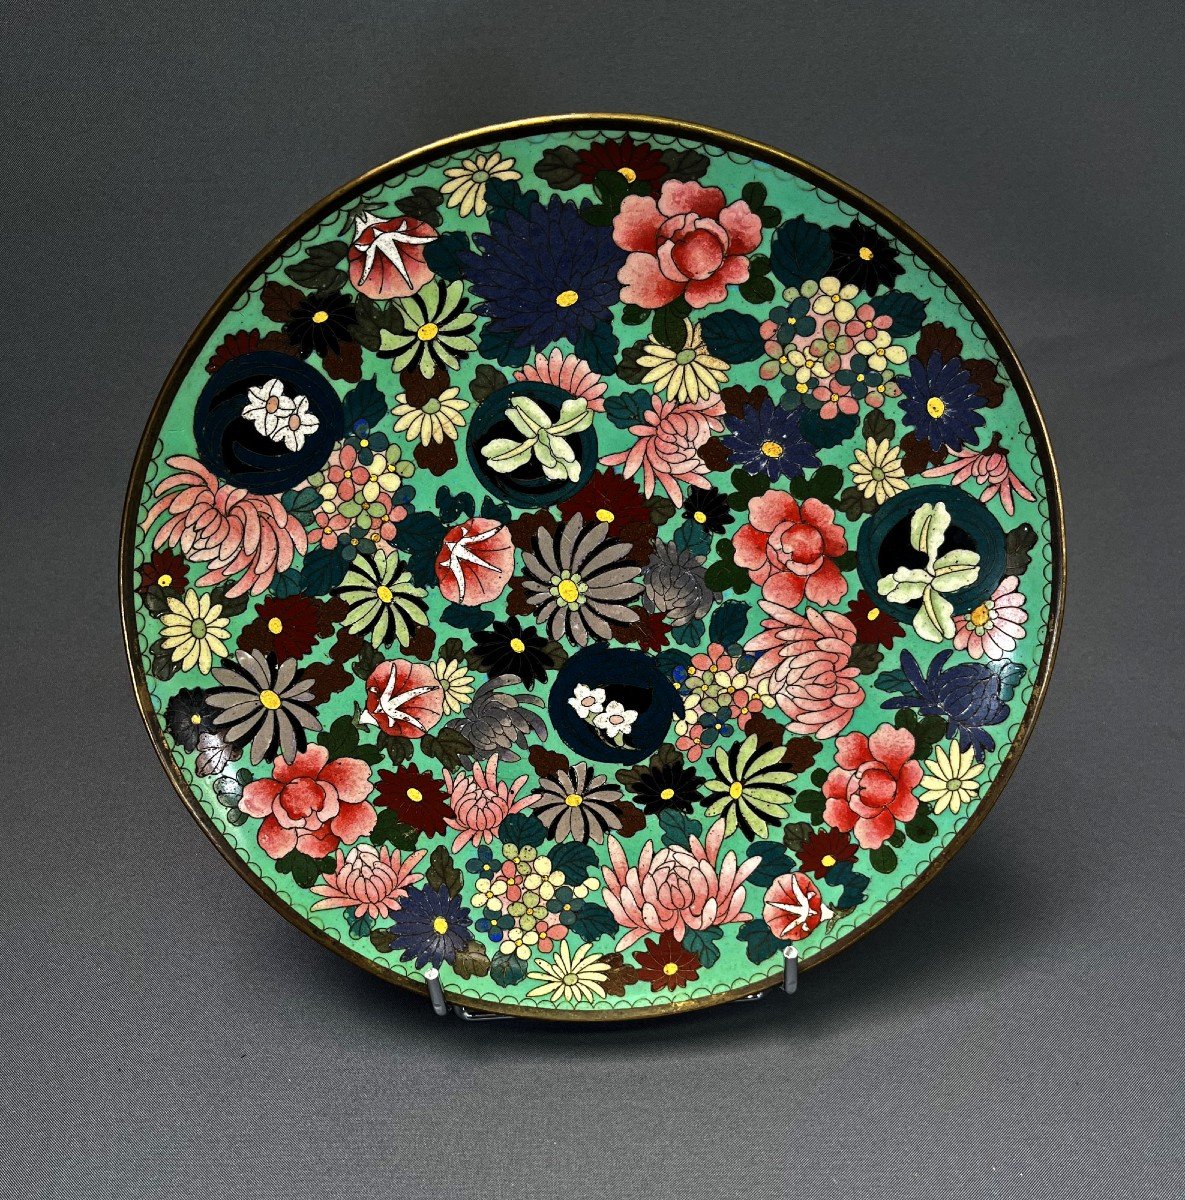 Cloisonné Japonais Ancien Grand Plat Floral Millefiori Période Meiji Vers 1890 - 1900